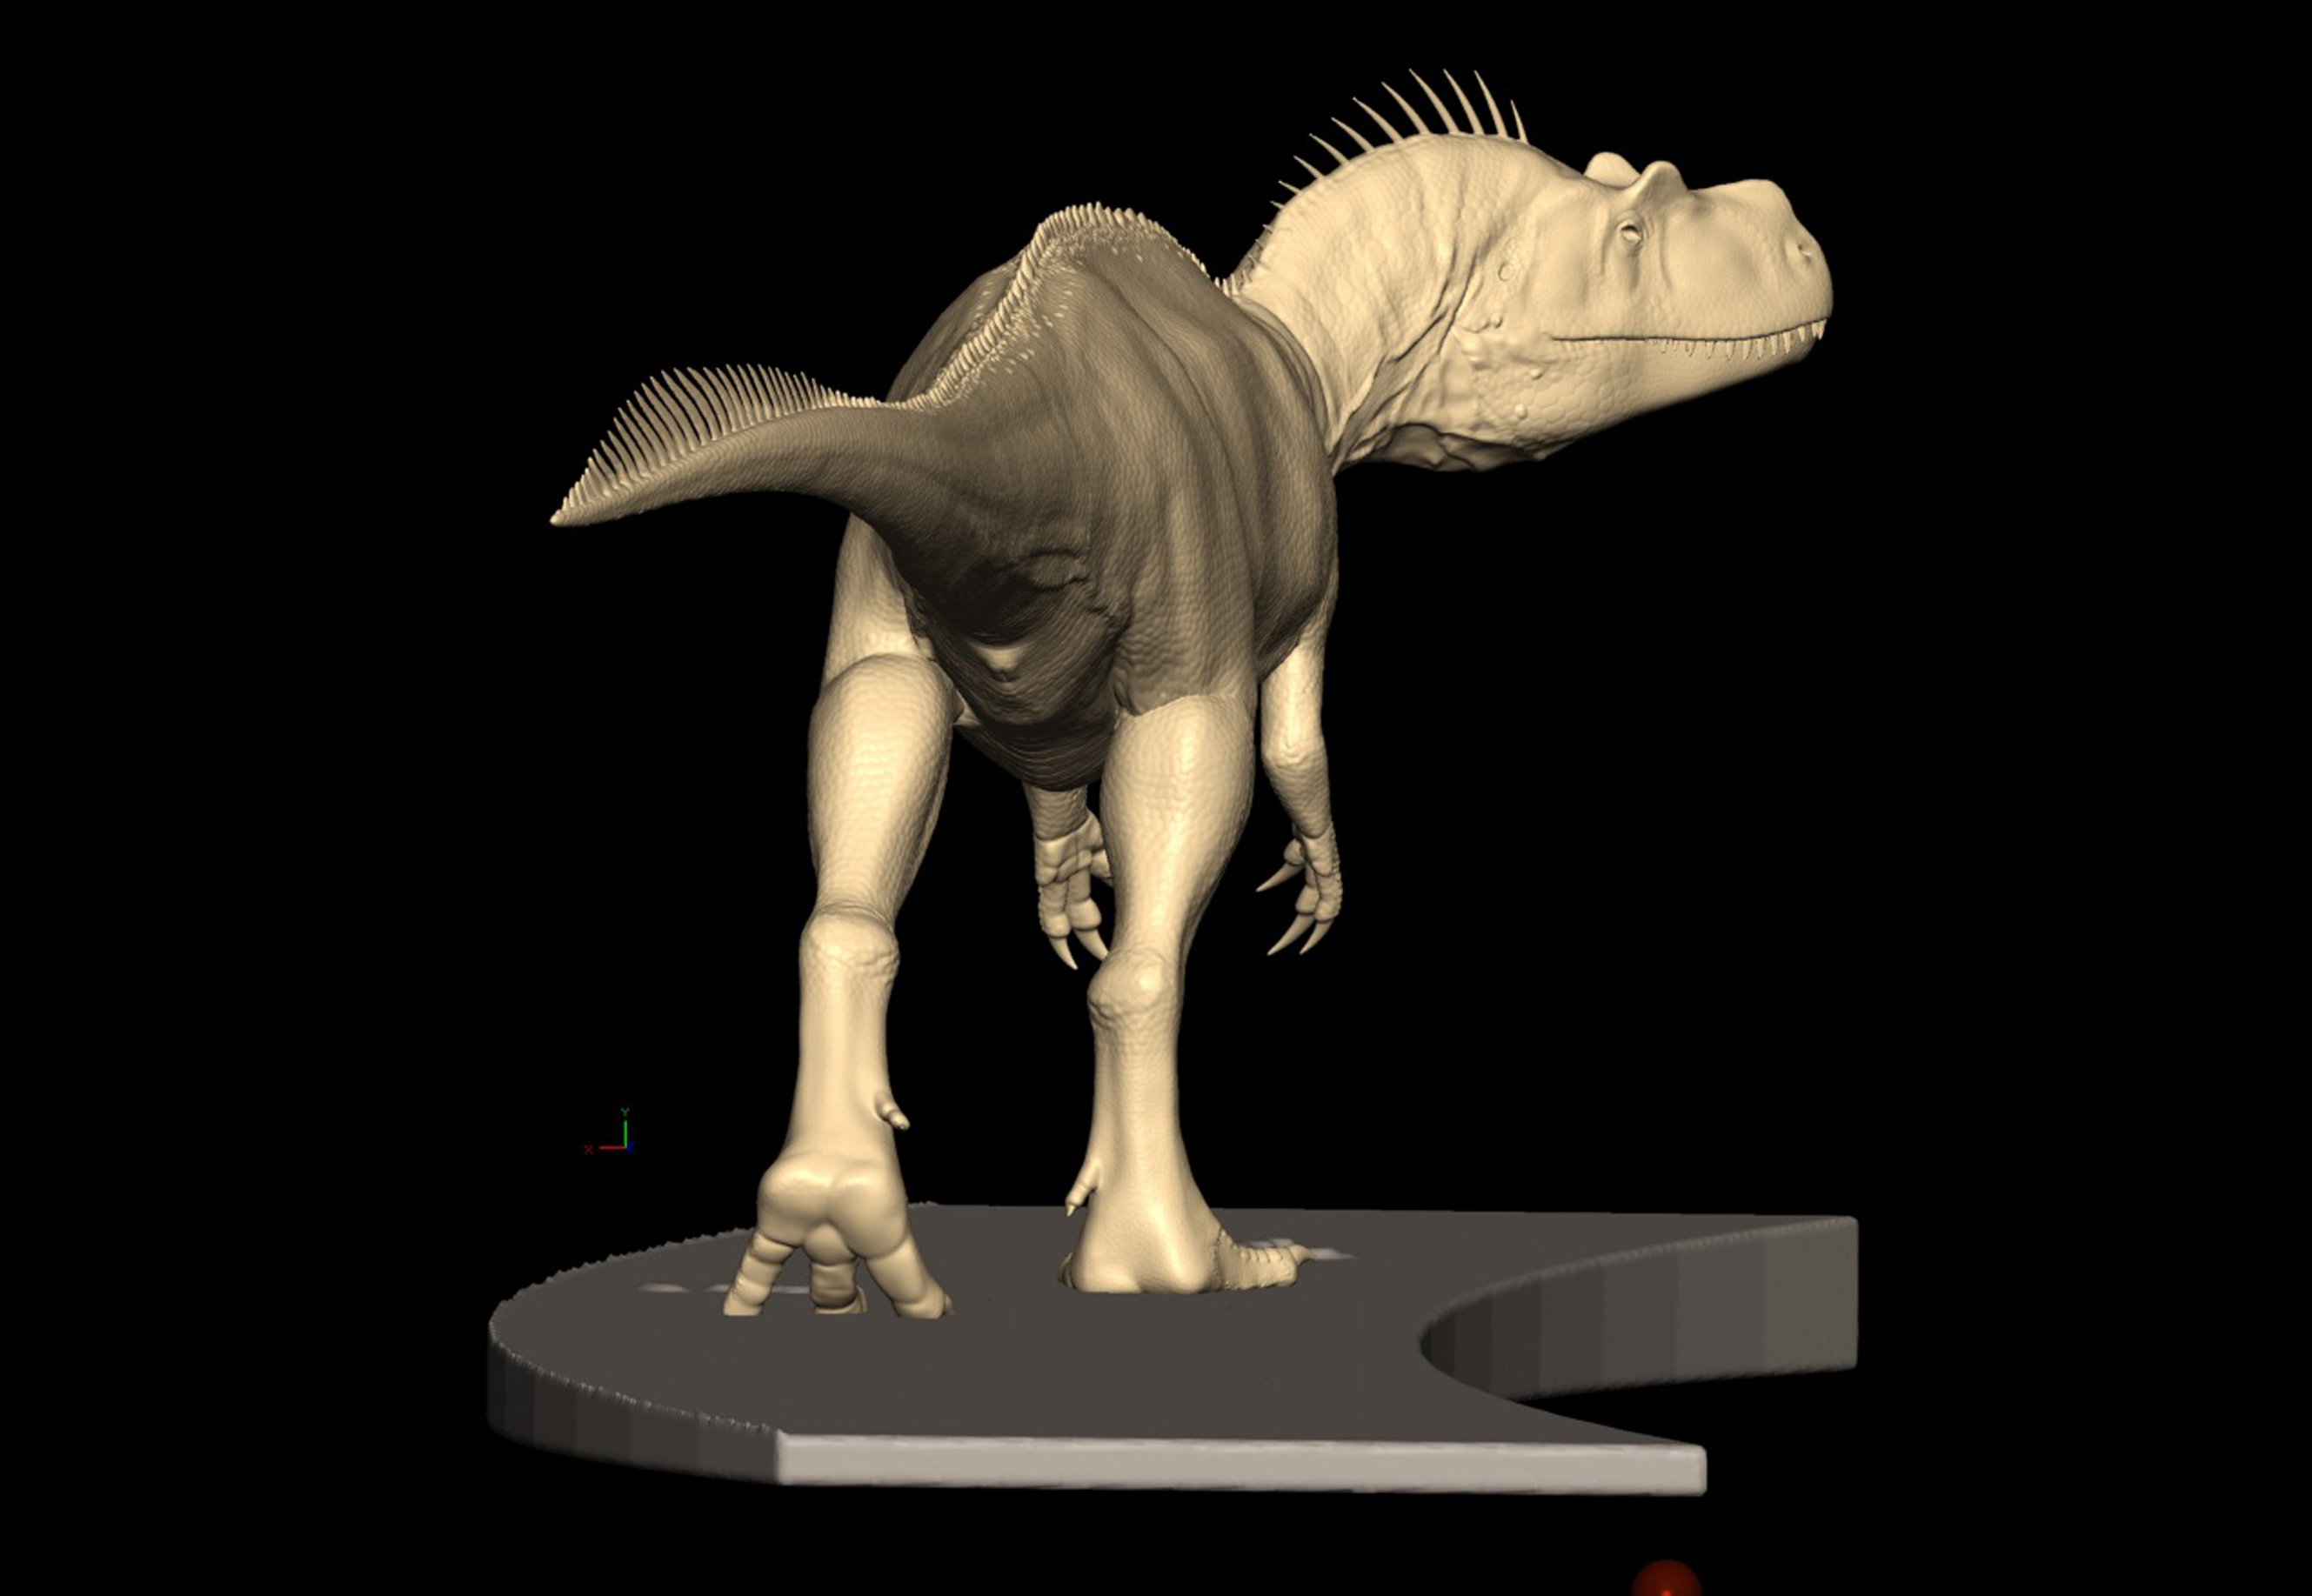 Febbraio 2021. Il Saltriovenator virtuale modellato in 3D e montato su un rendering del basamento espositivo, nella sua posa definitiva. Modello di Davide Bonadonna.